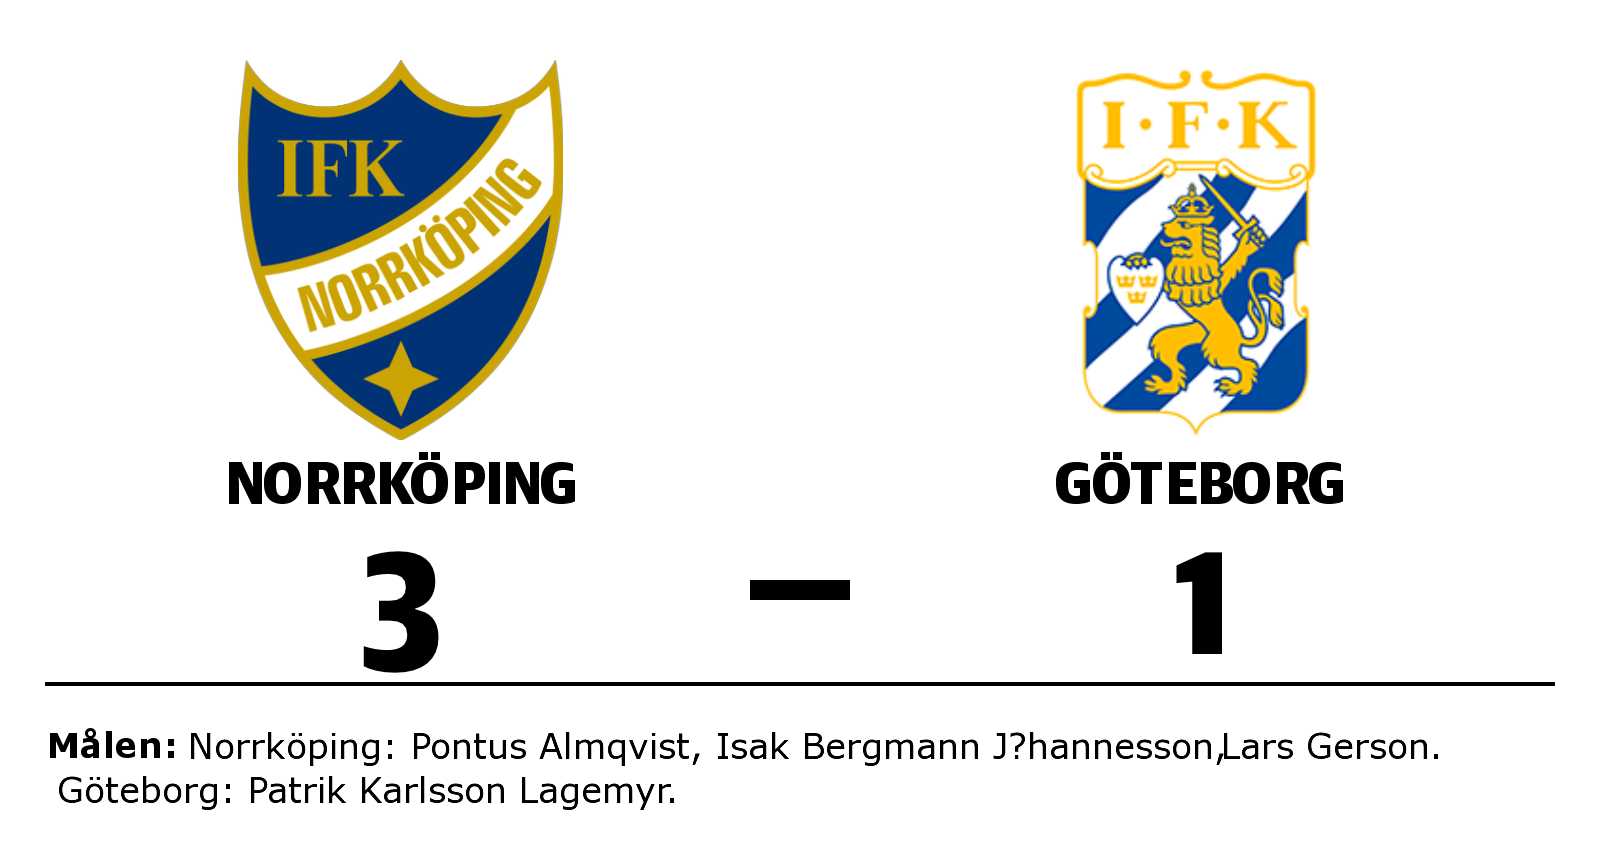 IFK Norrköping: Norrköping utökar serieledningen efter ny seger